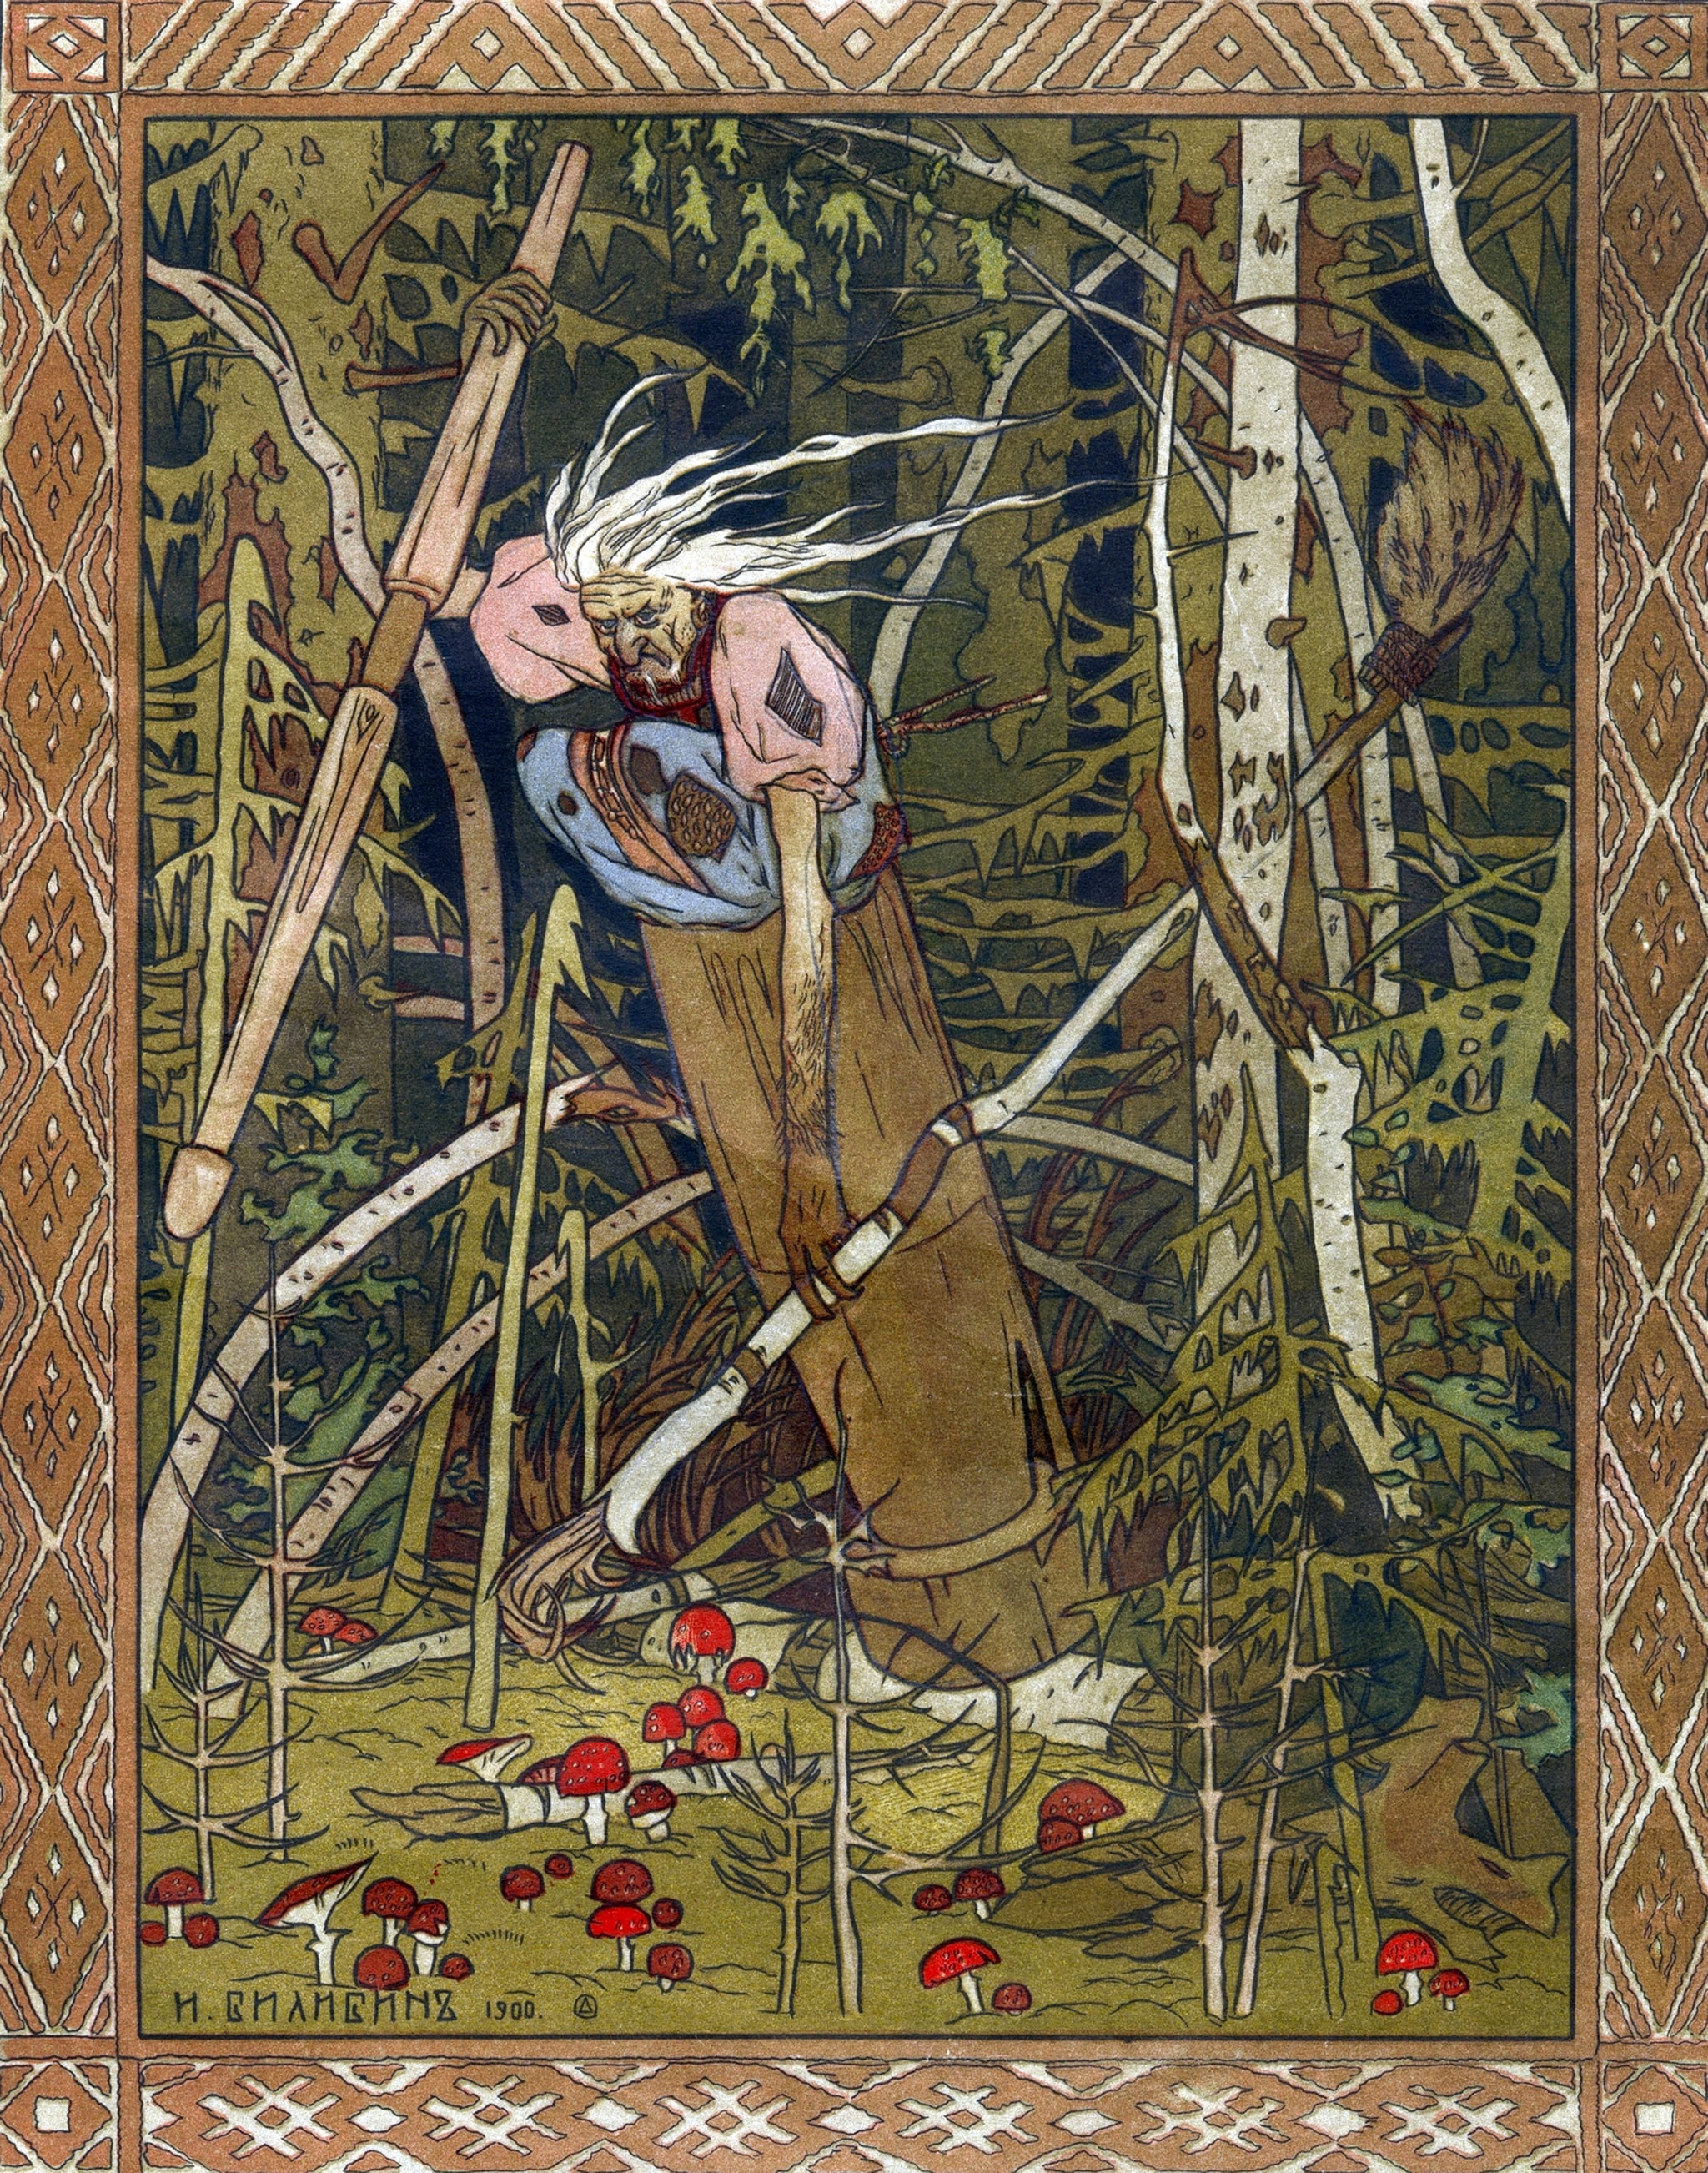 巴巴Yaga, 1900年。Vasilisa美丽的插图的书。Bilibin,伊万Yakovlevich (1876 - 1942)。博物馆的收藏中发现Goznak,莫斯科。(图片由美术图片/遗产图片/盖蒂图片社)